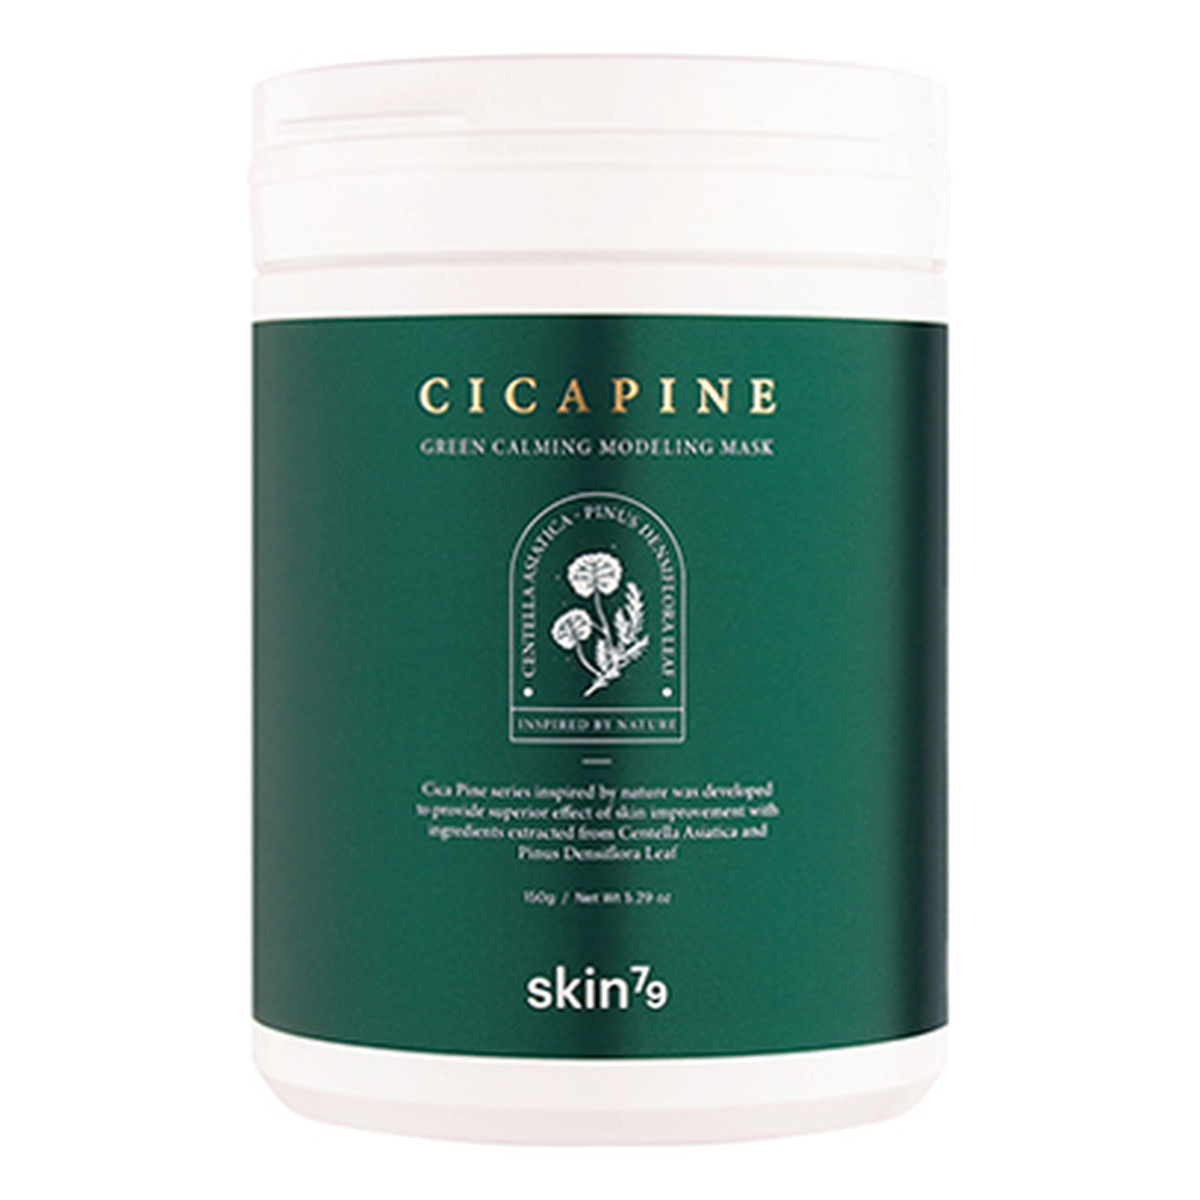 Skin79 Cica Pine Green Calming Modeling Mask Oczyszczająco - regenerująca maska algowa do twarzy 150g